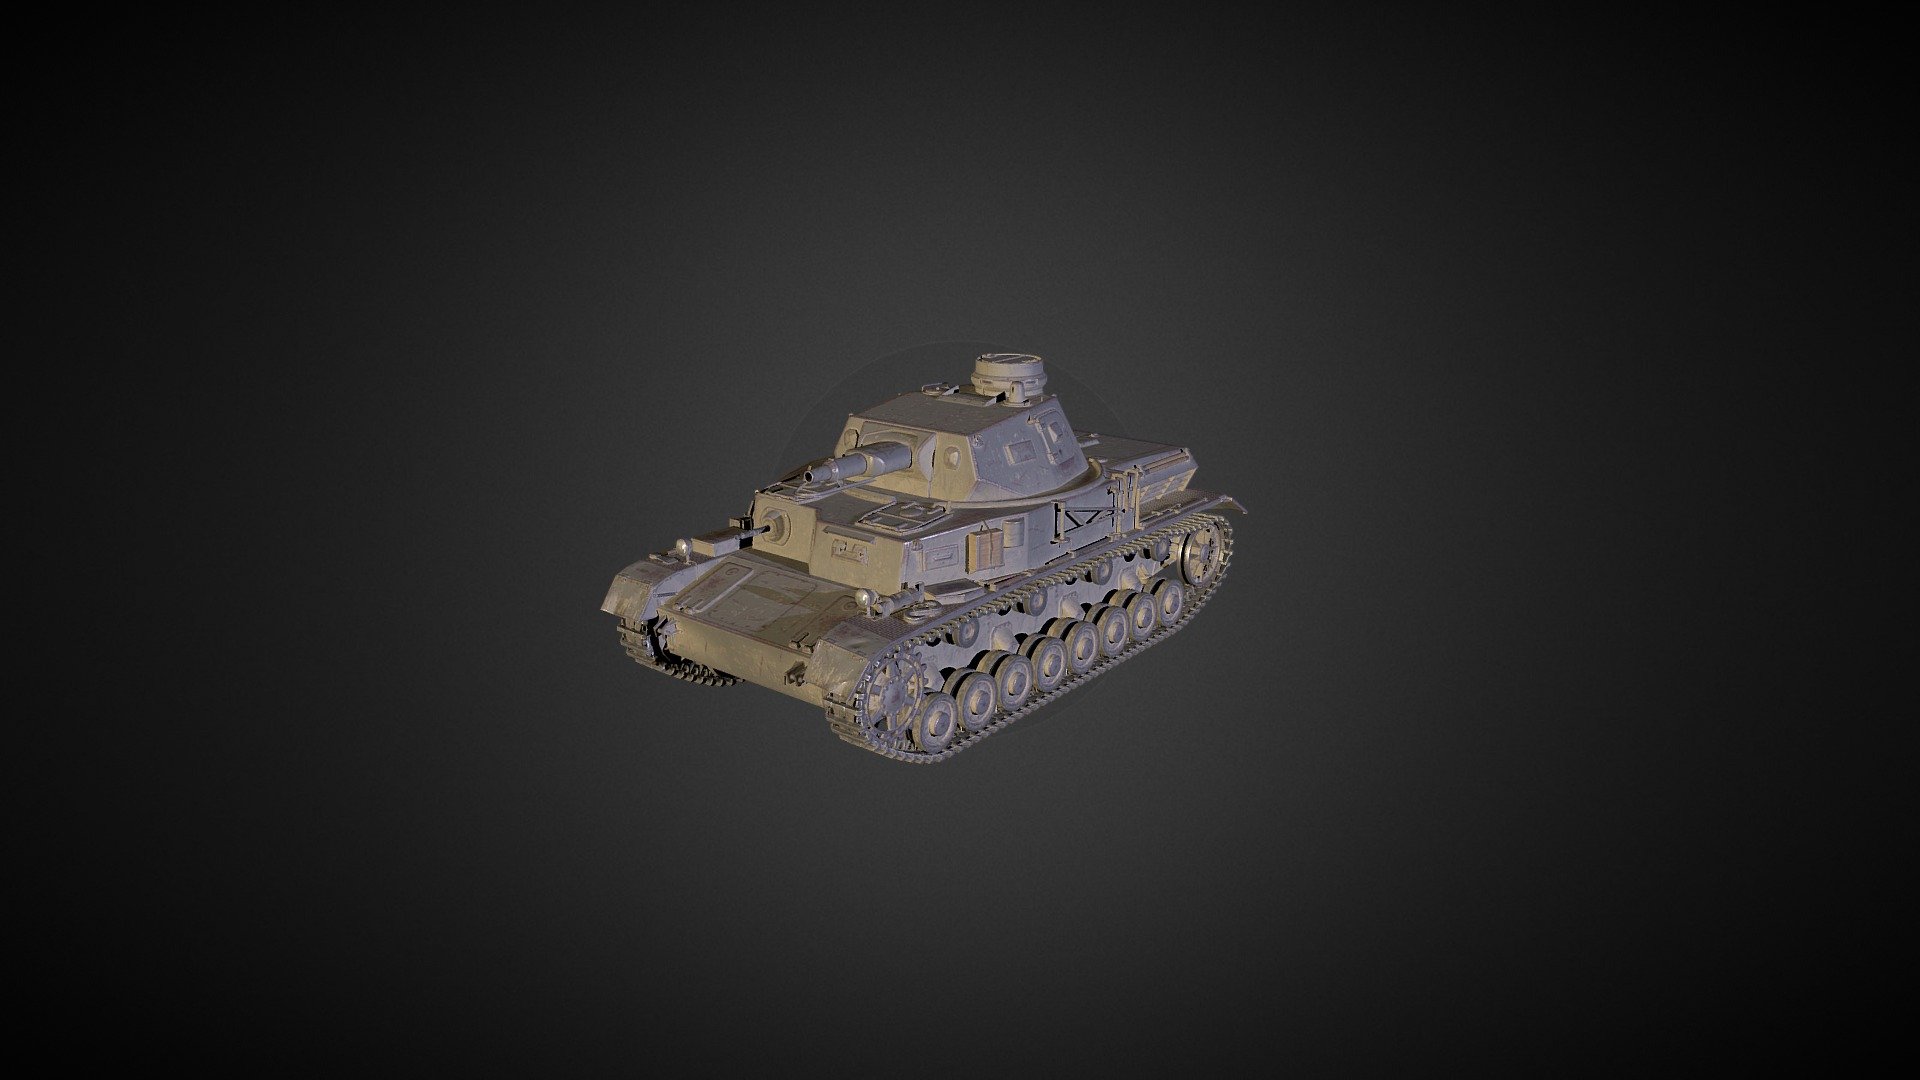 Pz.Kpfw. IV Ausf. A